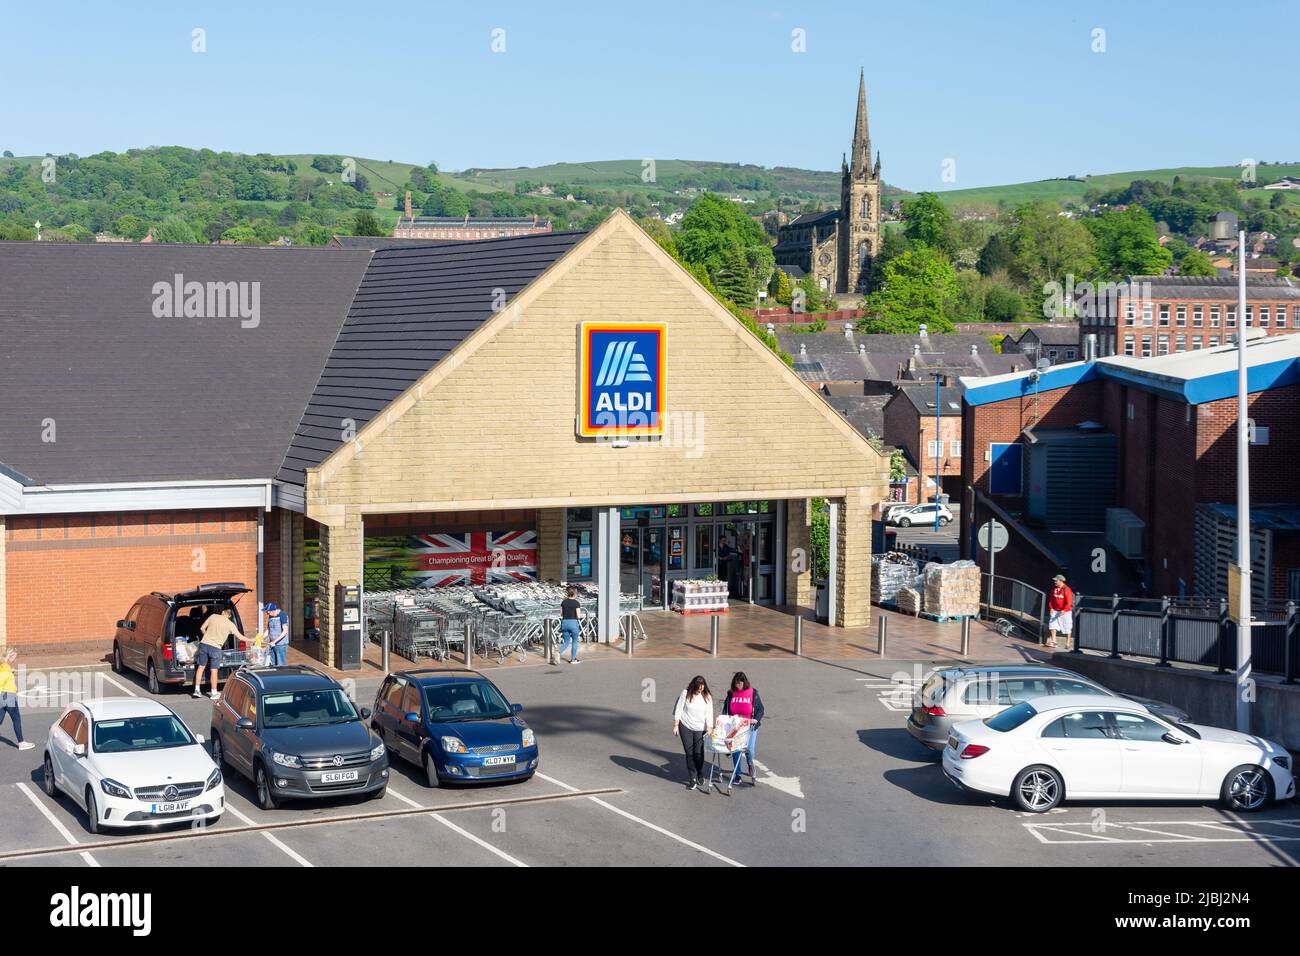 Aldi Supermarket, Queen Victoria Street, Macclesfield, Cheshire, England, United Kingdom Stock Photo